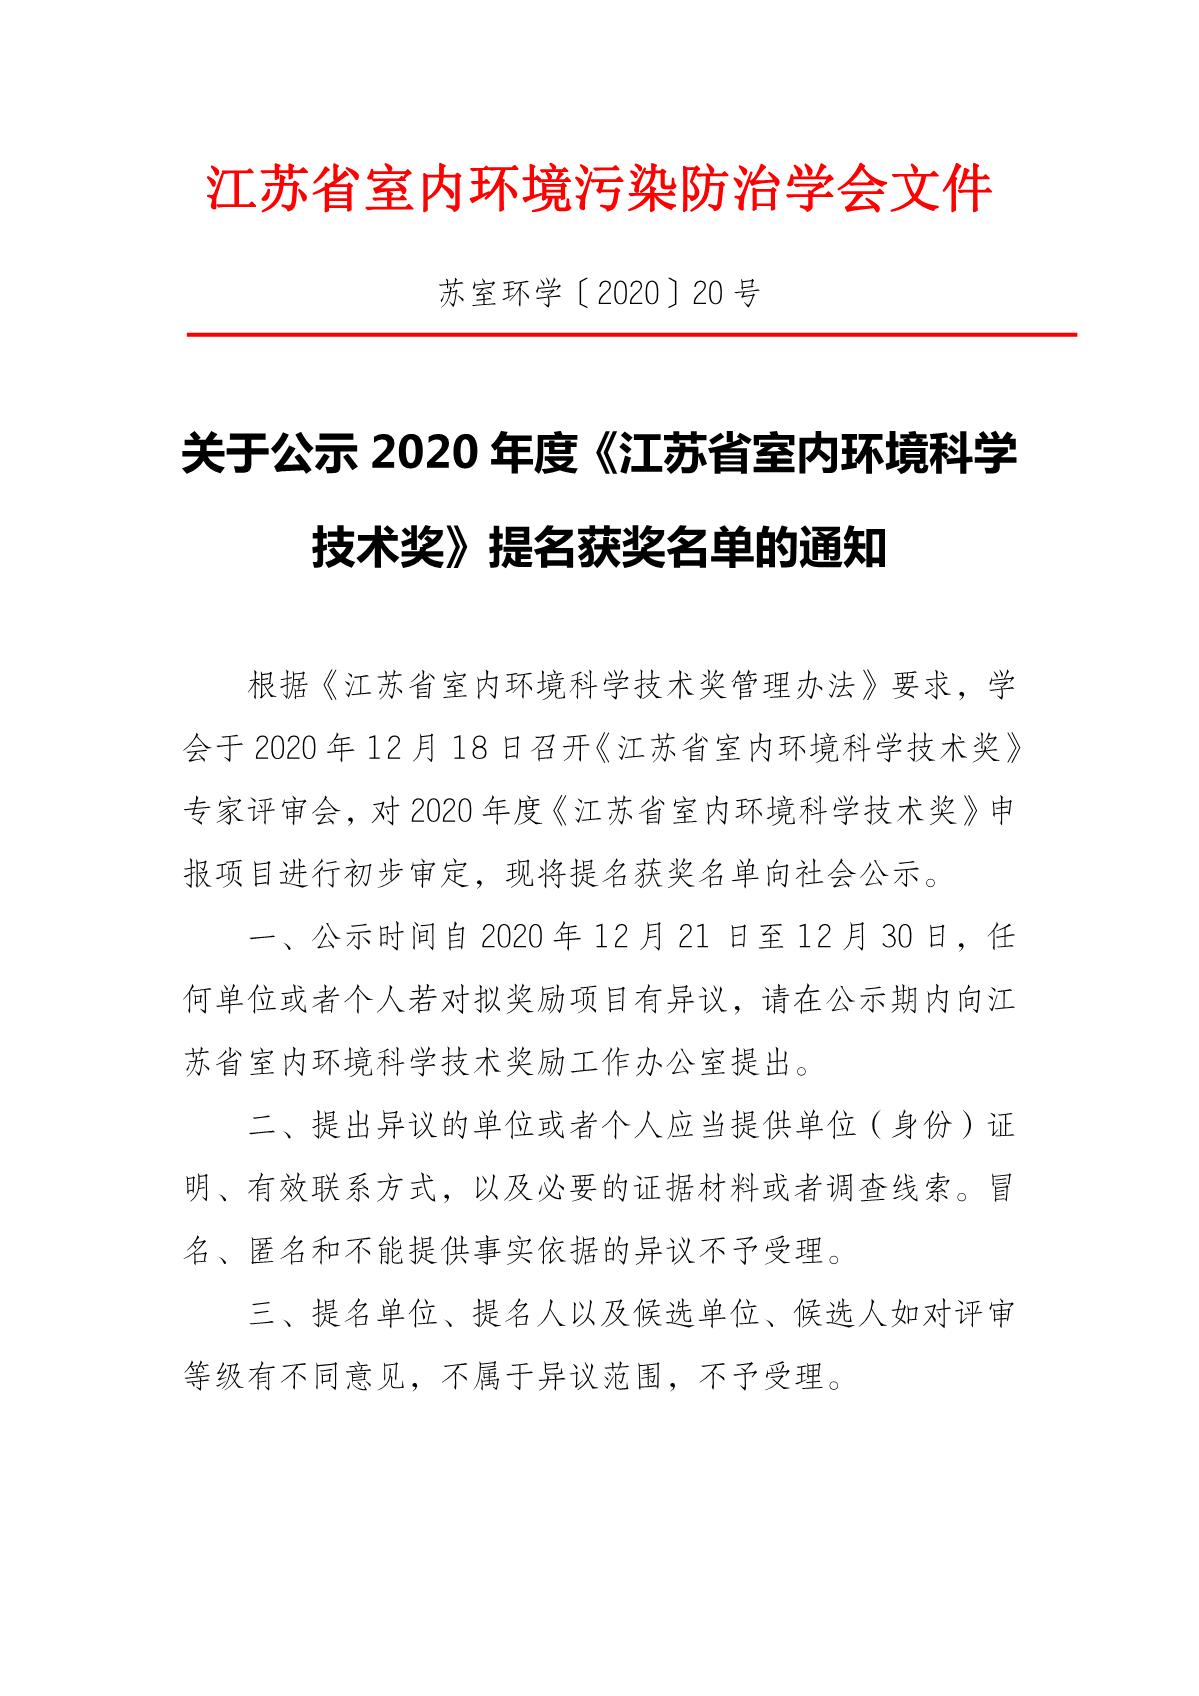 关于公示2020年度《江苏省室内环境科学技术奖》提名获奖名单的通知_1.JPG